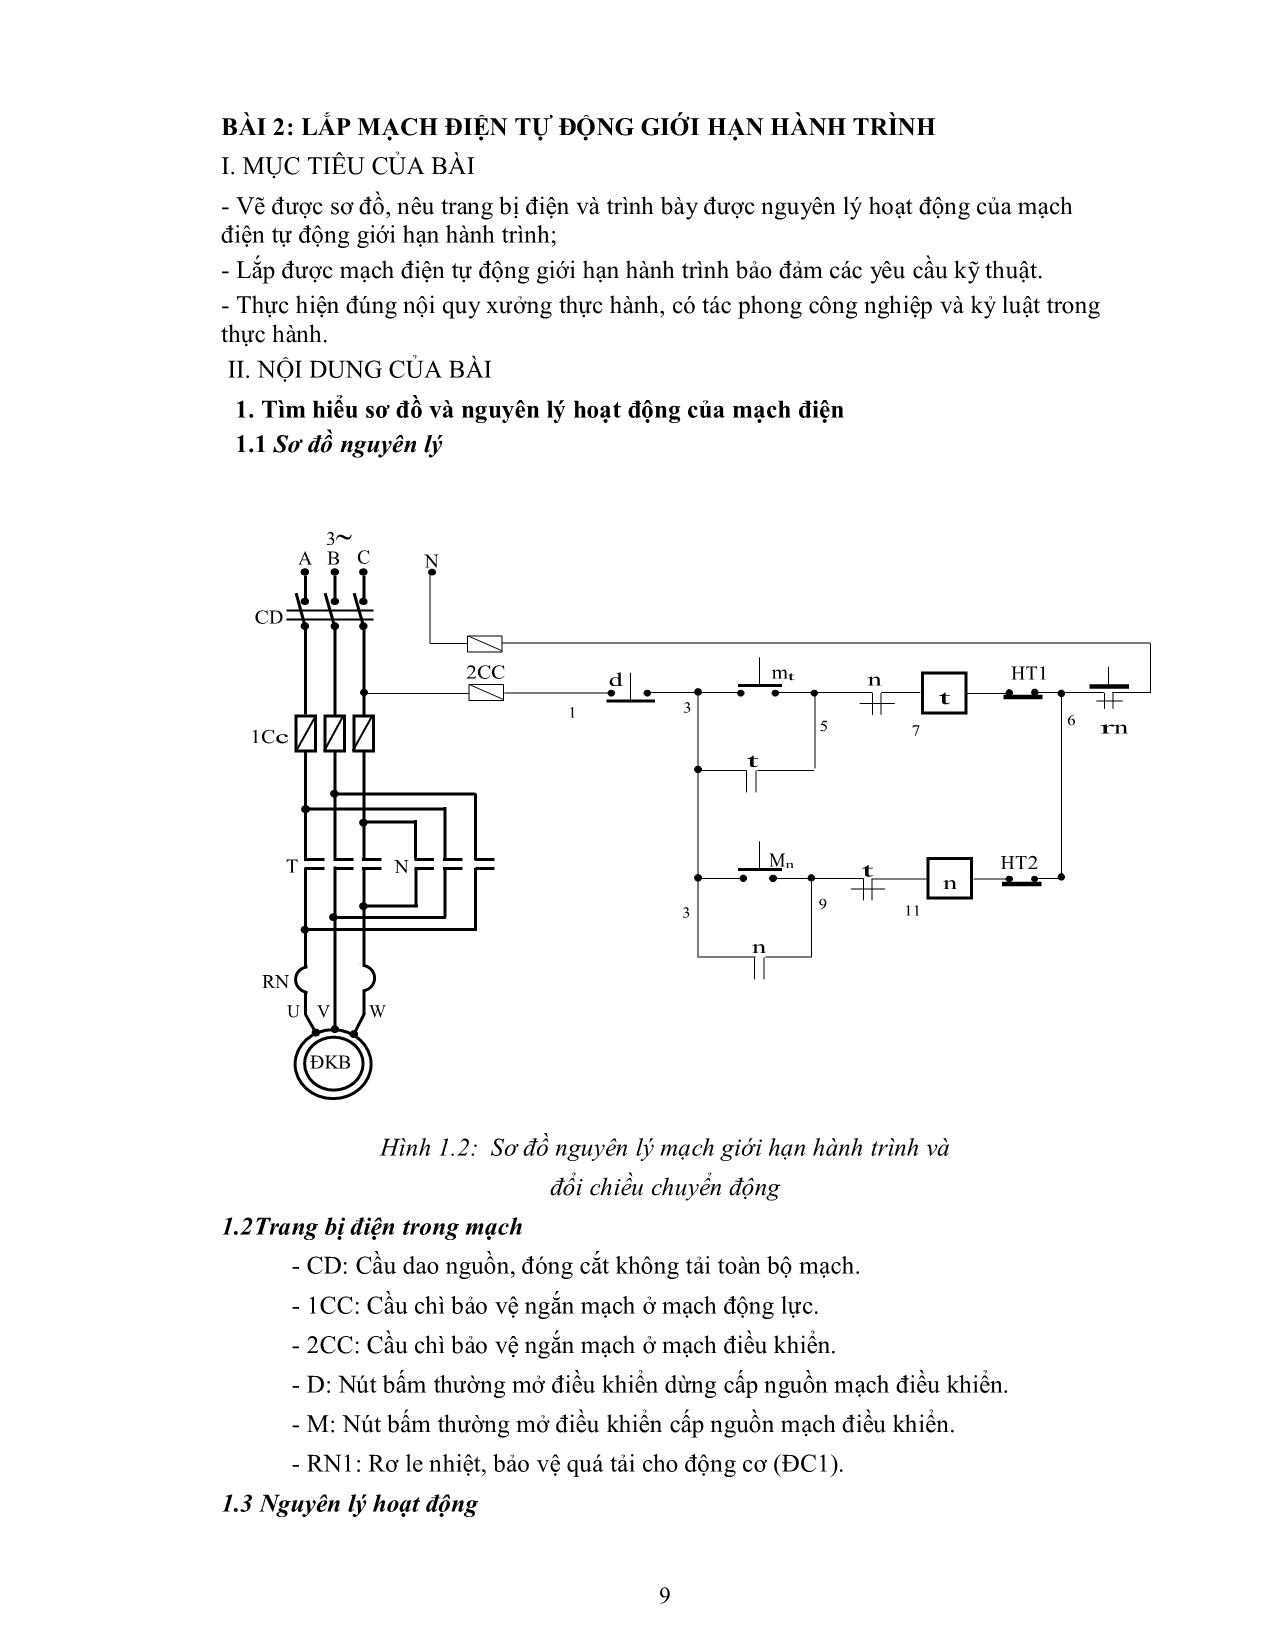 Bài giảng mô đun Thực hành lắp mạch điều khiển trang 10